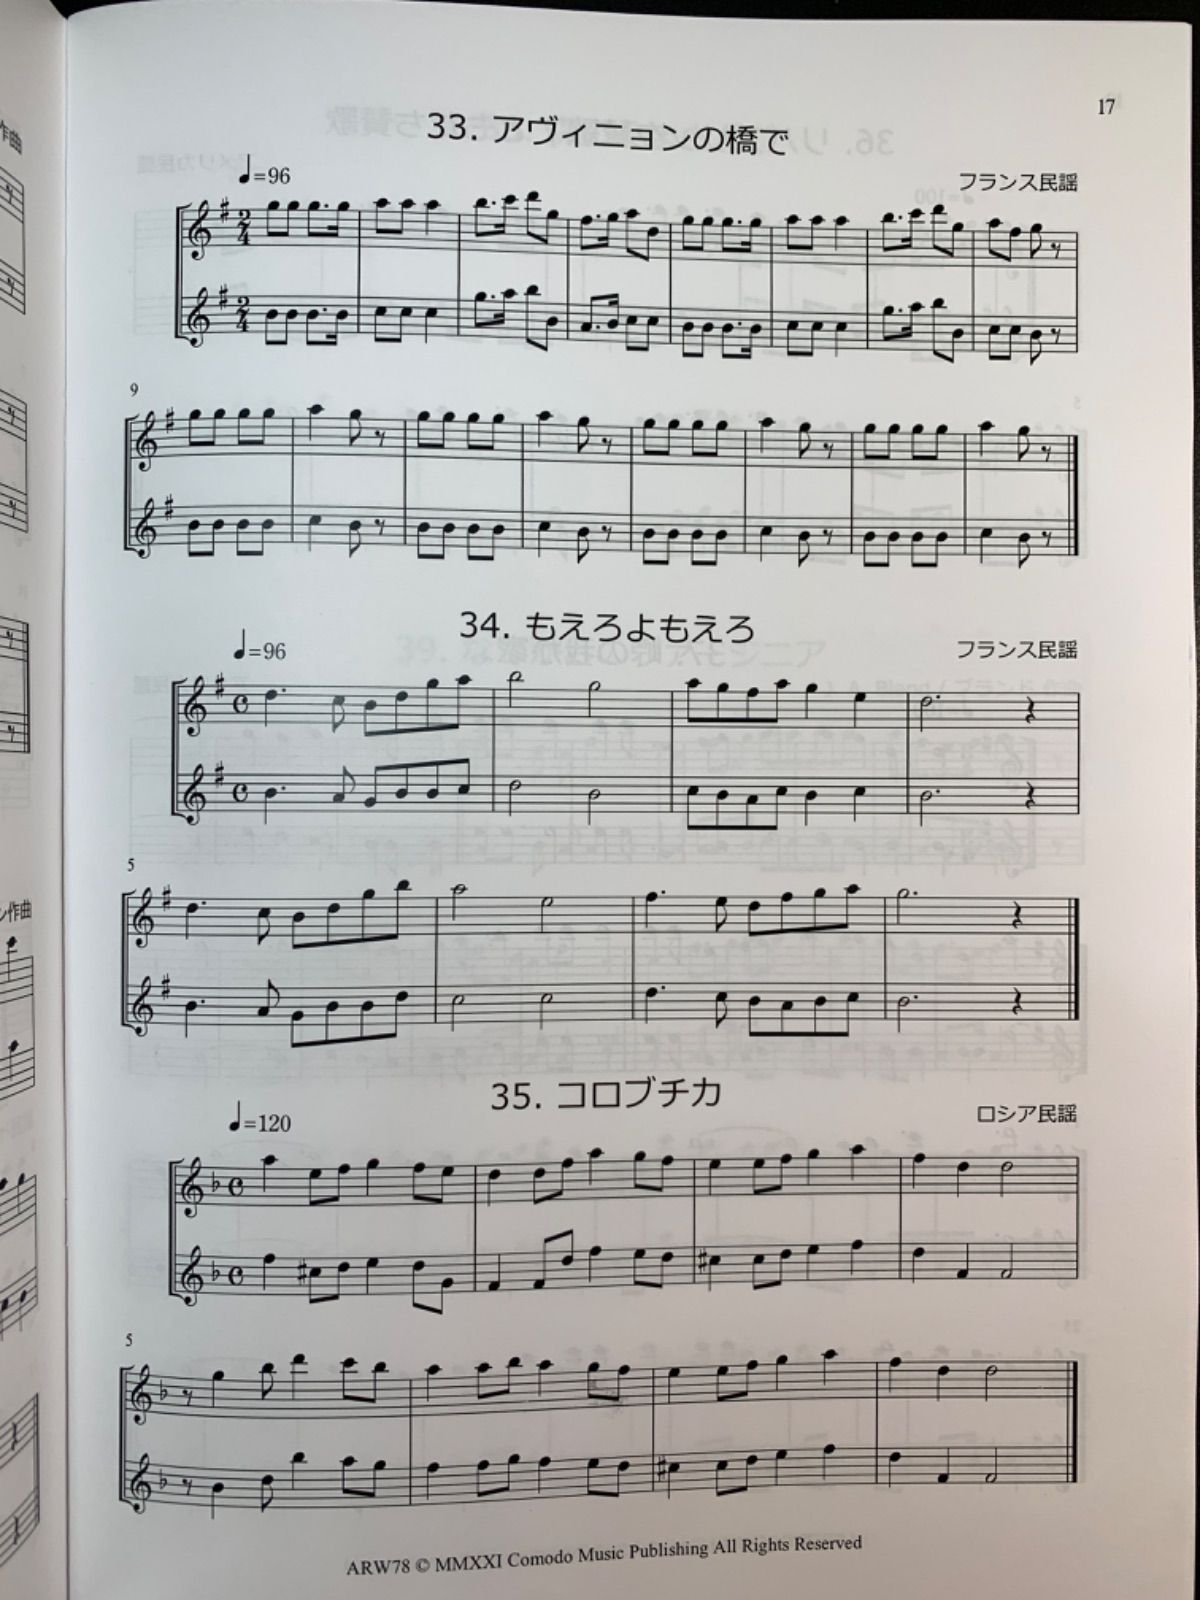 B 各種楽器用 2冊セット楽譜 「メロディ練習曲集」世界編・日本編 - メルカリ